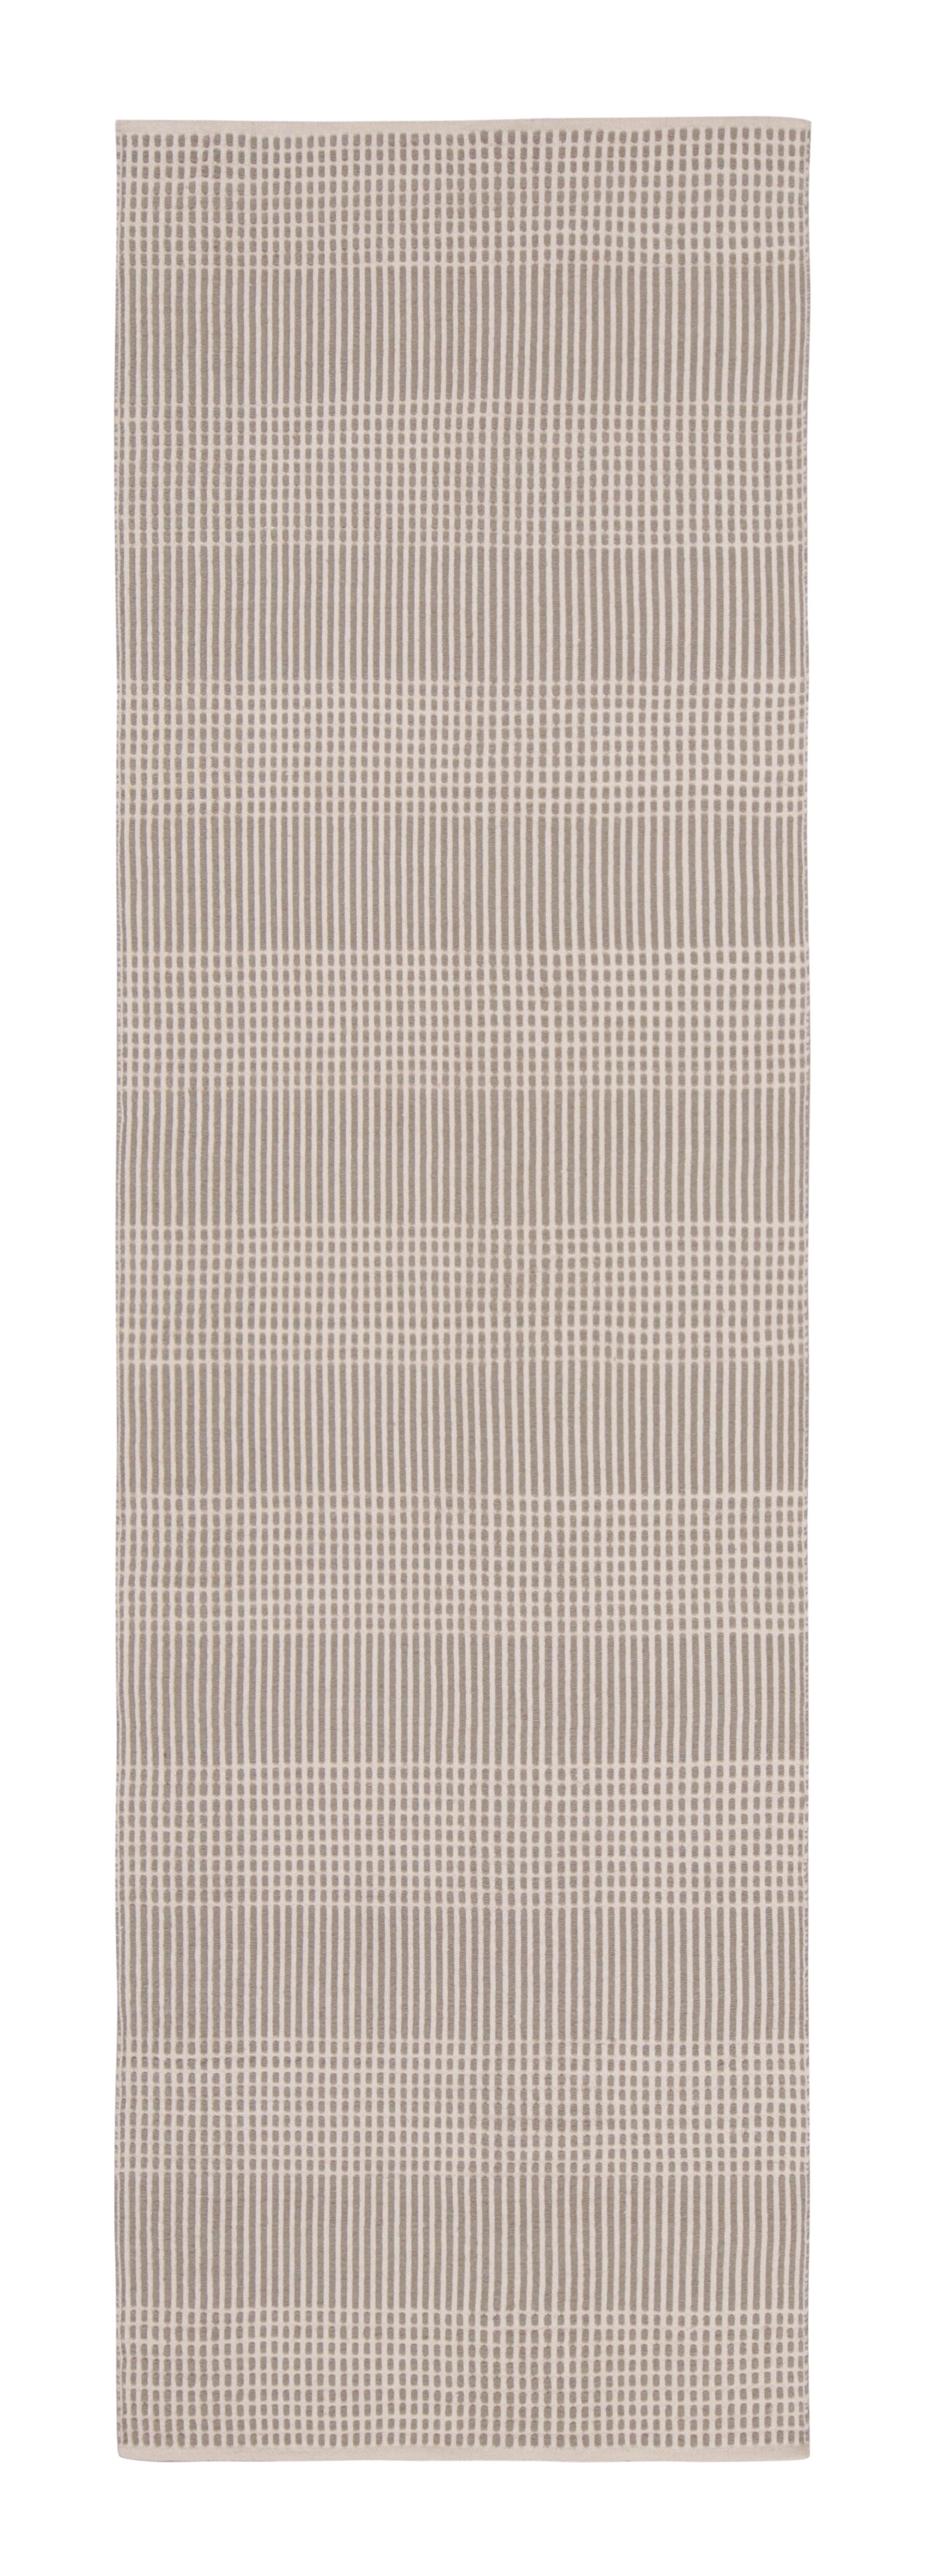 Moderner Flachgewebter Teppich mit geometrischem gestreiftem Muster in Beige und Braun, Teppich & Kelim